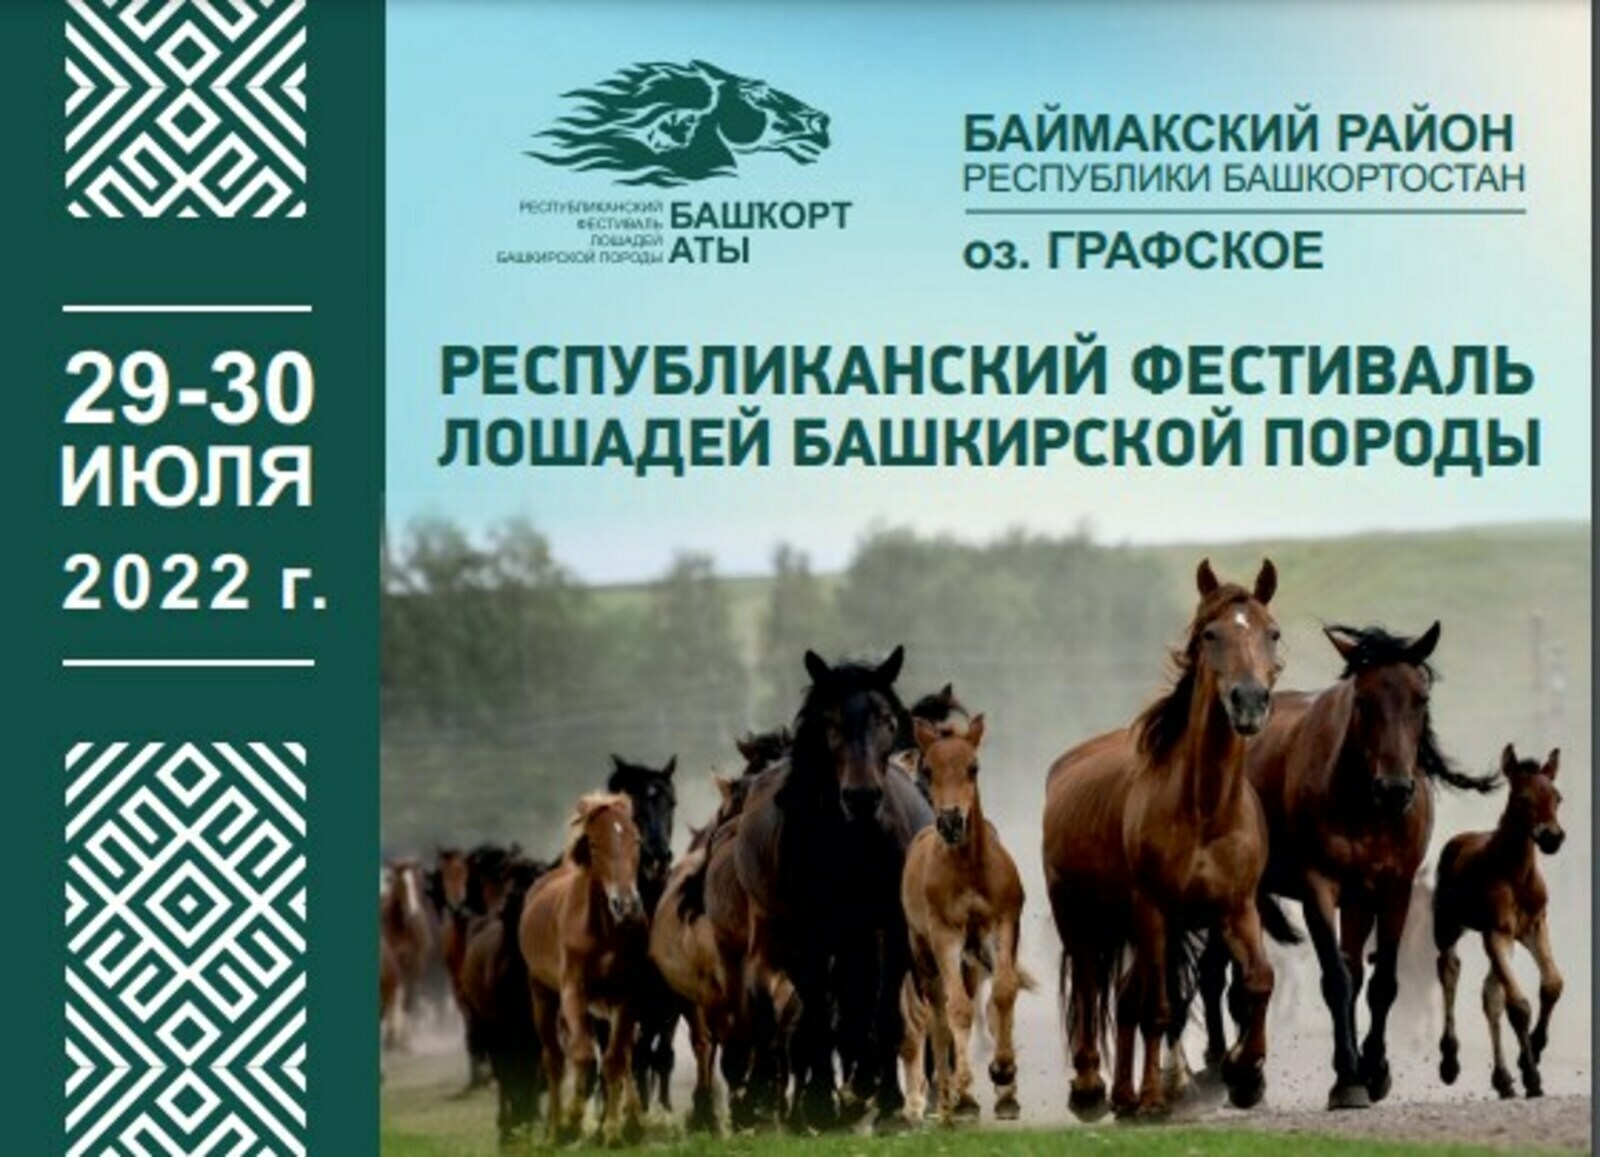 Республиканский фестиваль лошадей башкирской породы «Башҡорт аты» приглашает